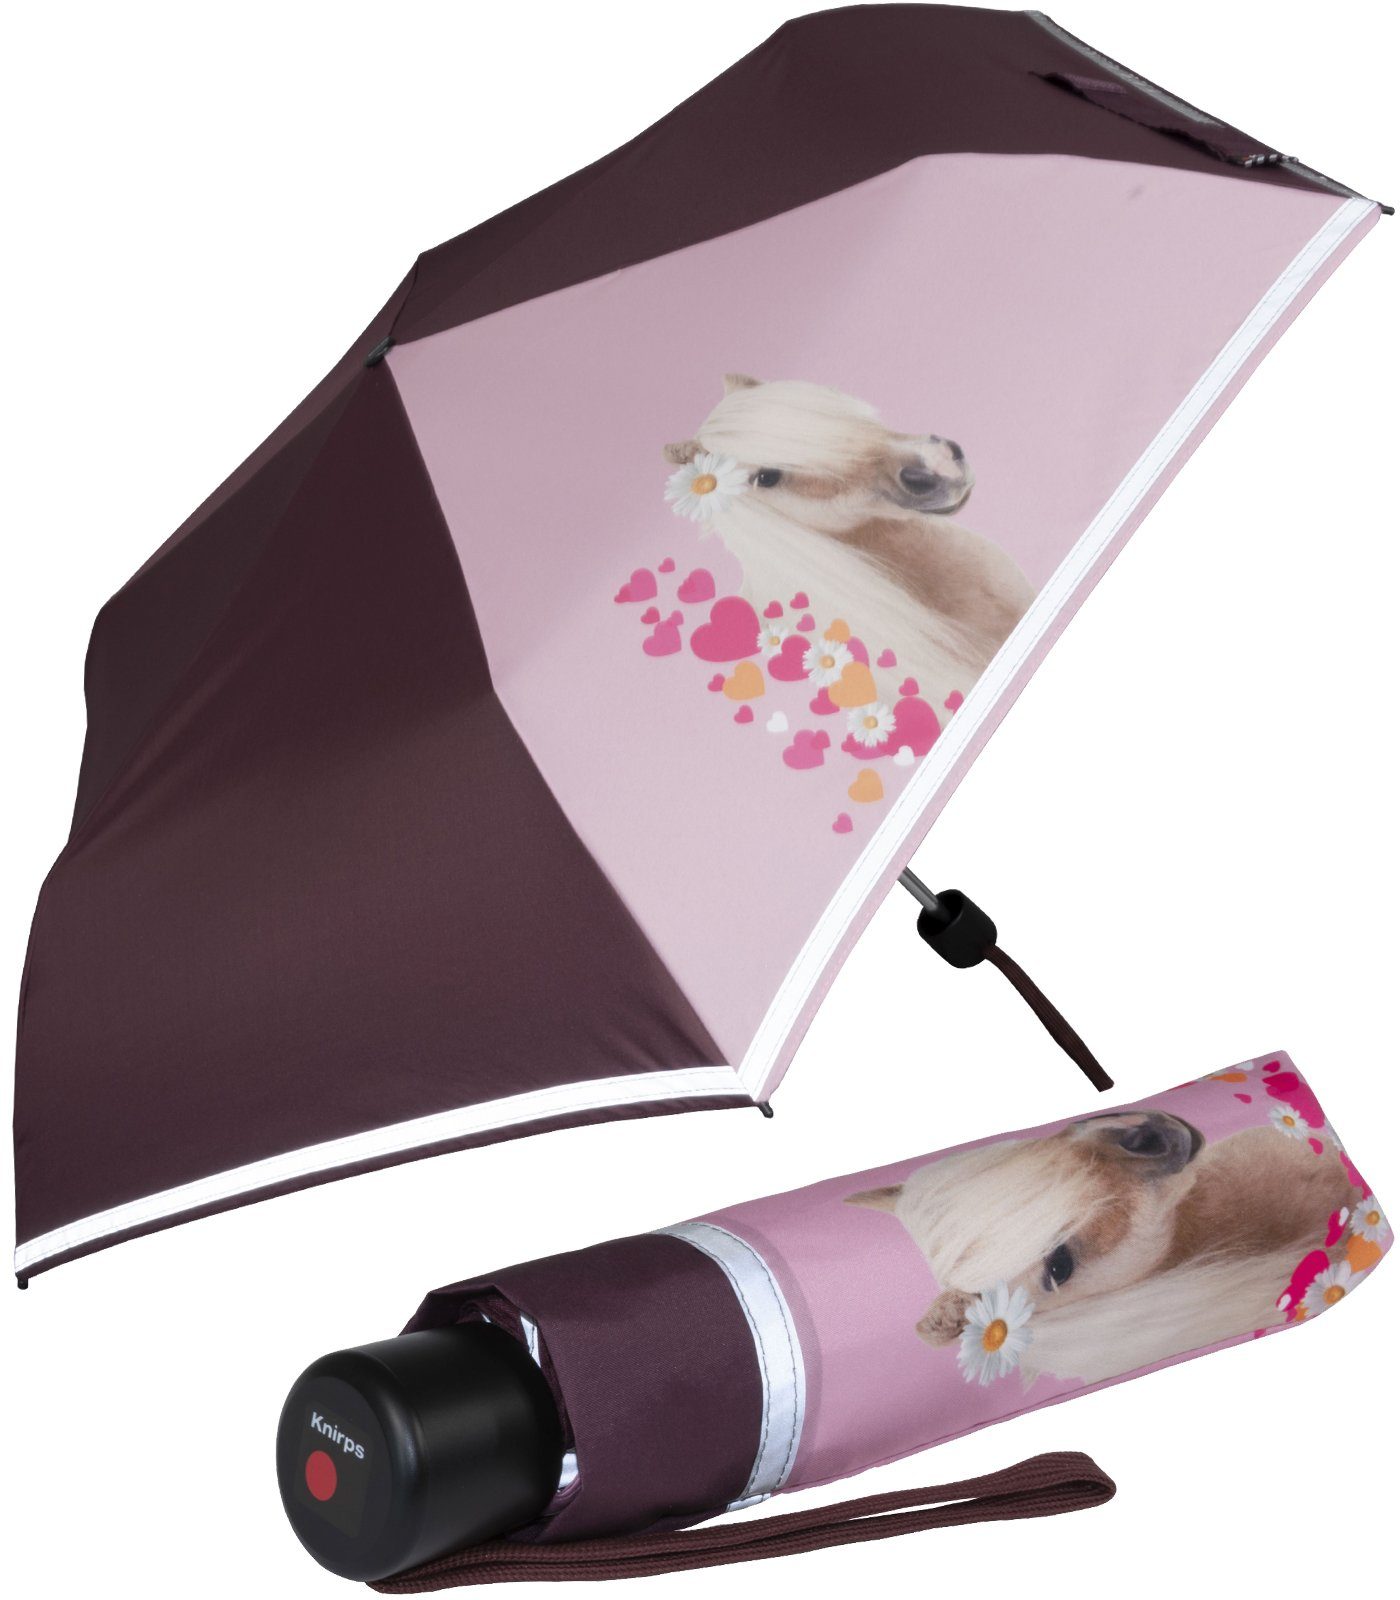 Knirps® Taschenregenschirm Kinderschirm 4Kids reflective Reflexborte, mit dem Pferde, auf Sicherheit Horselove Schulweg